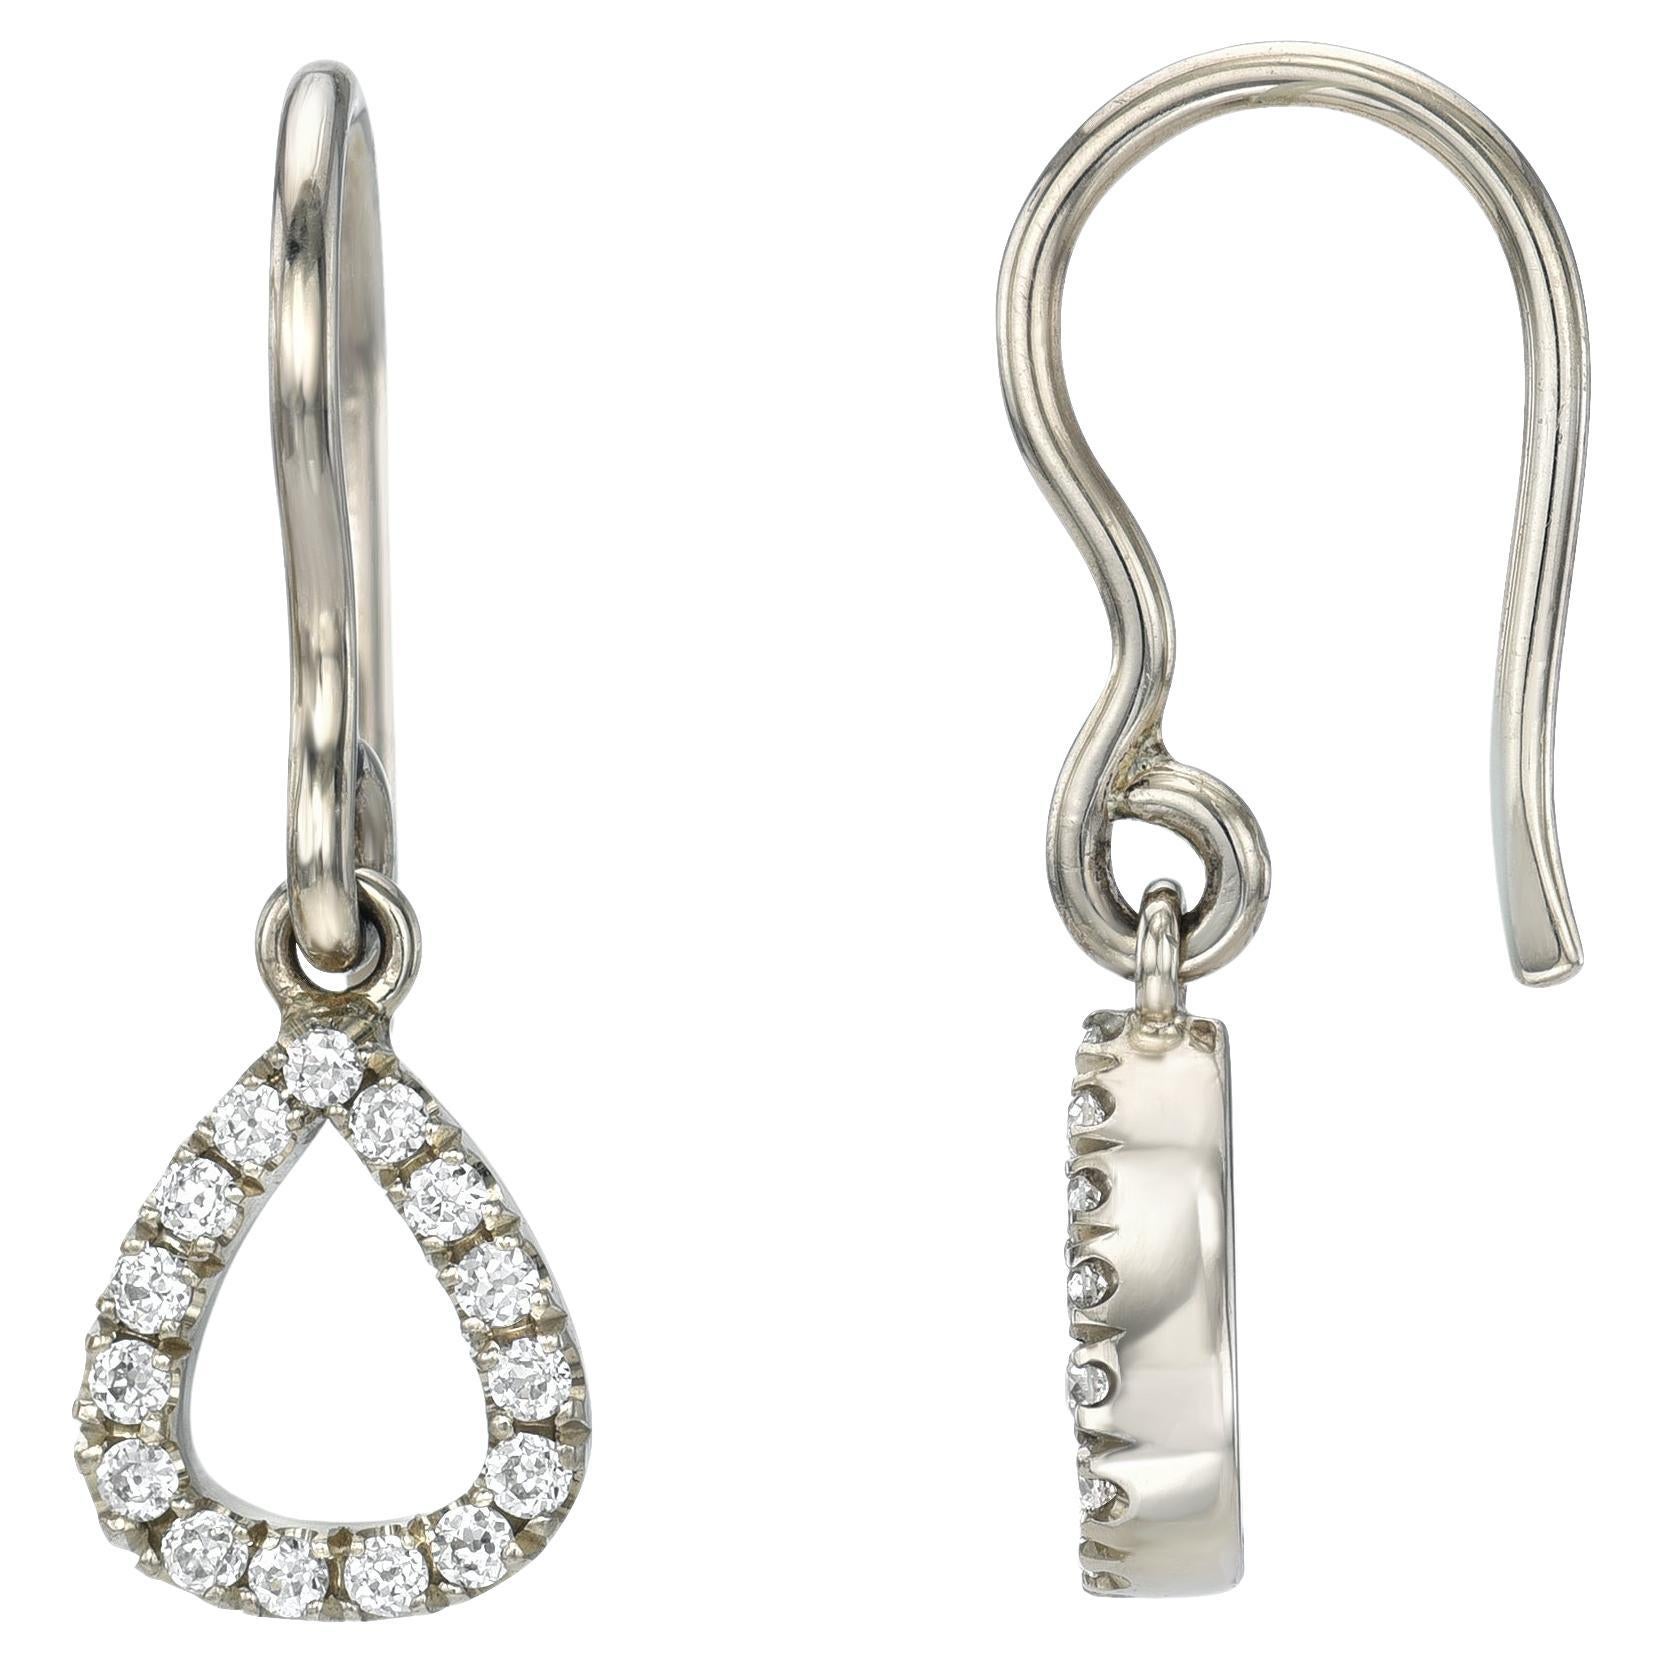 Handcrafted Keely Old European Cut Diamond Drop Earrings by Single Stone